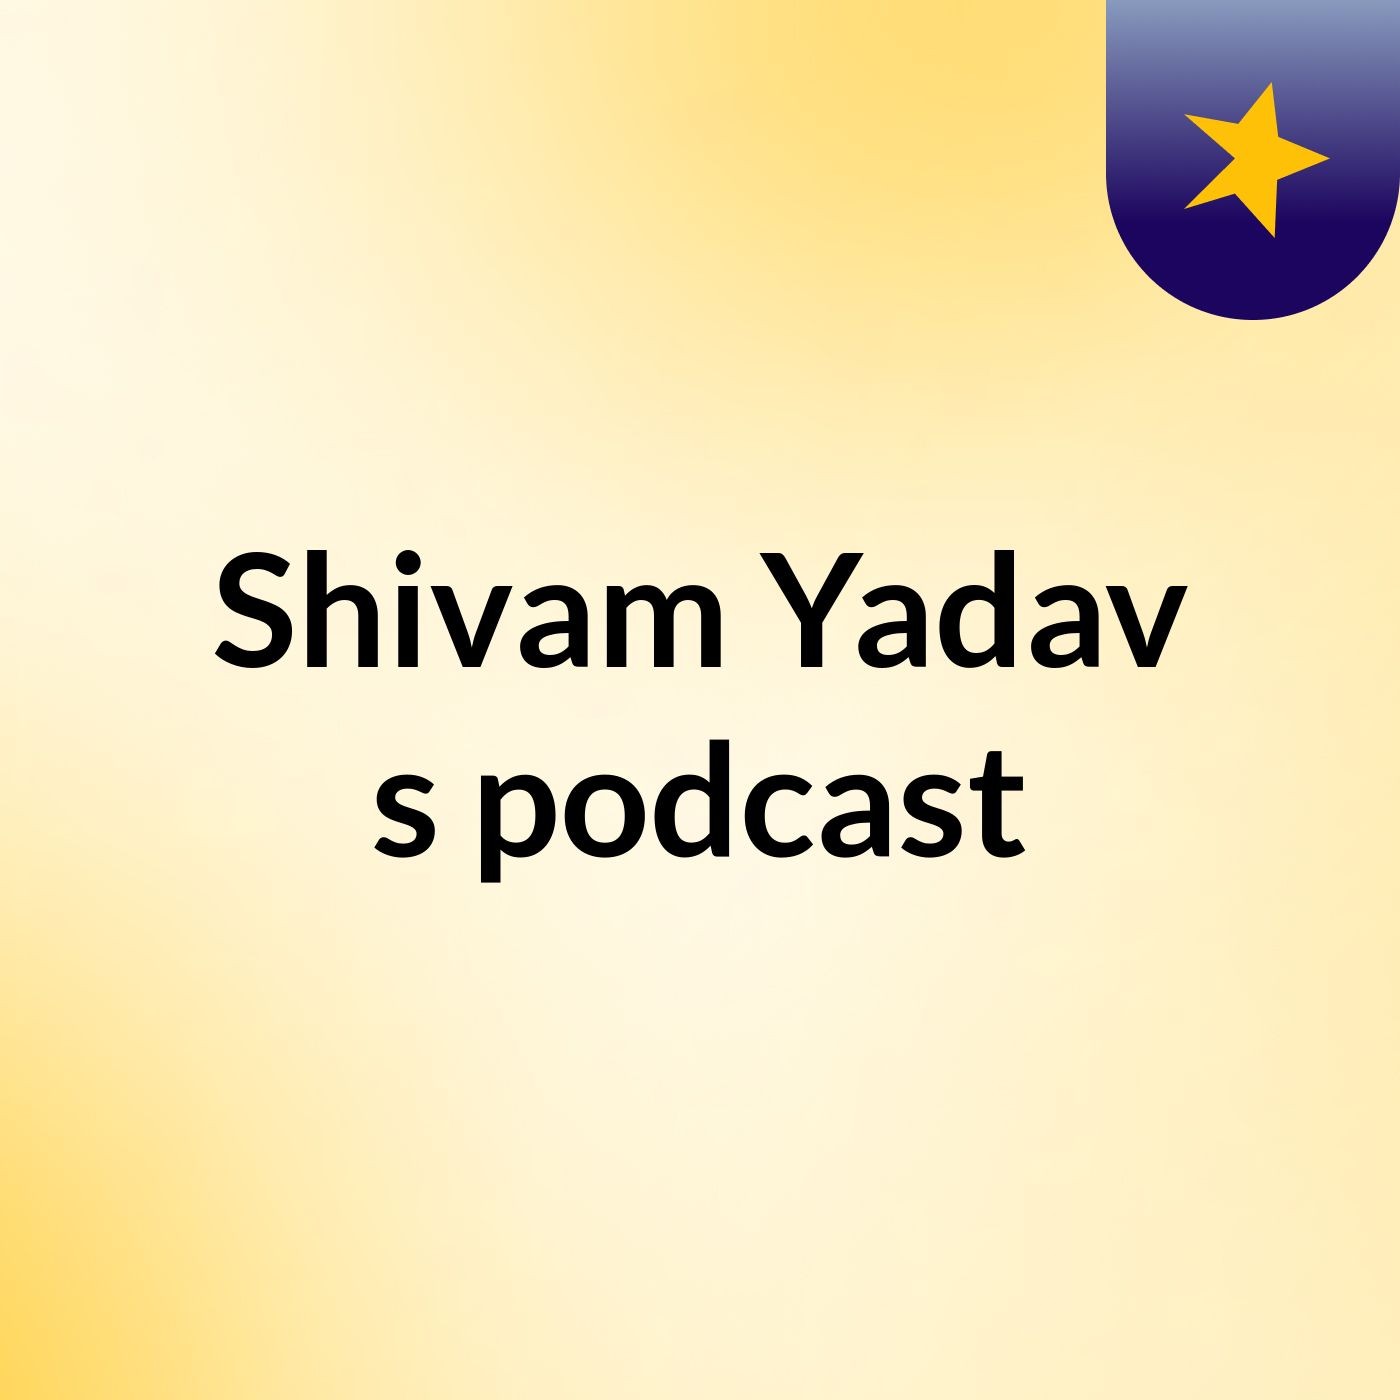 Episode 5 - Shivam Yadav's podcast